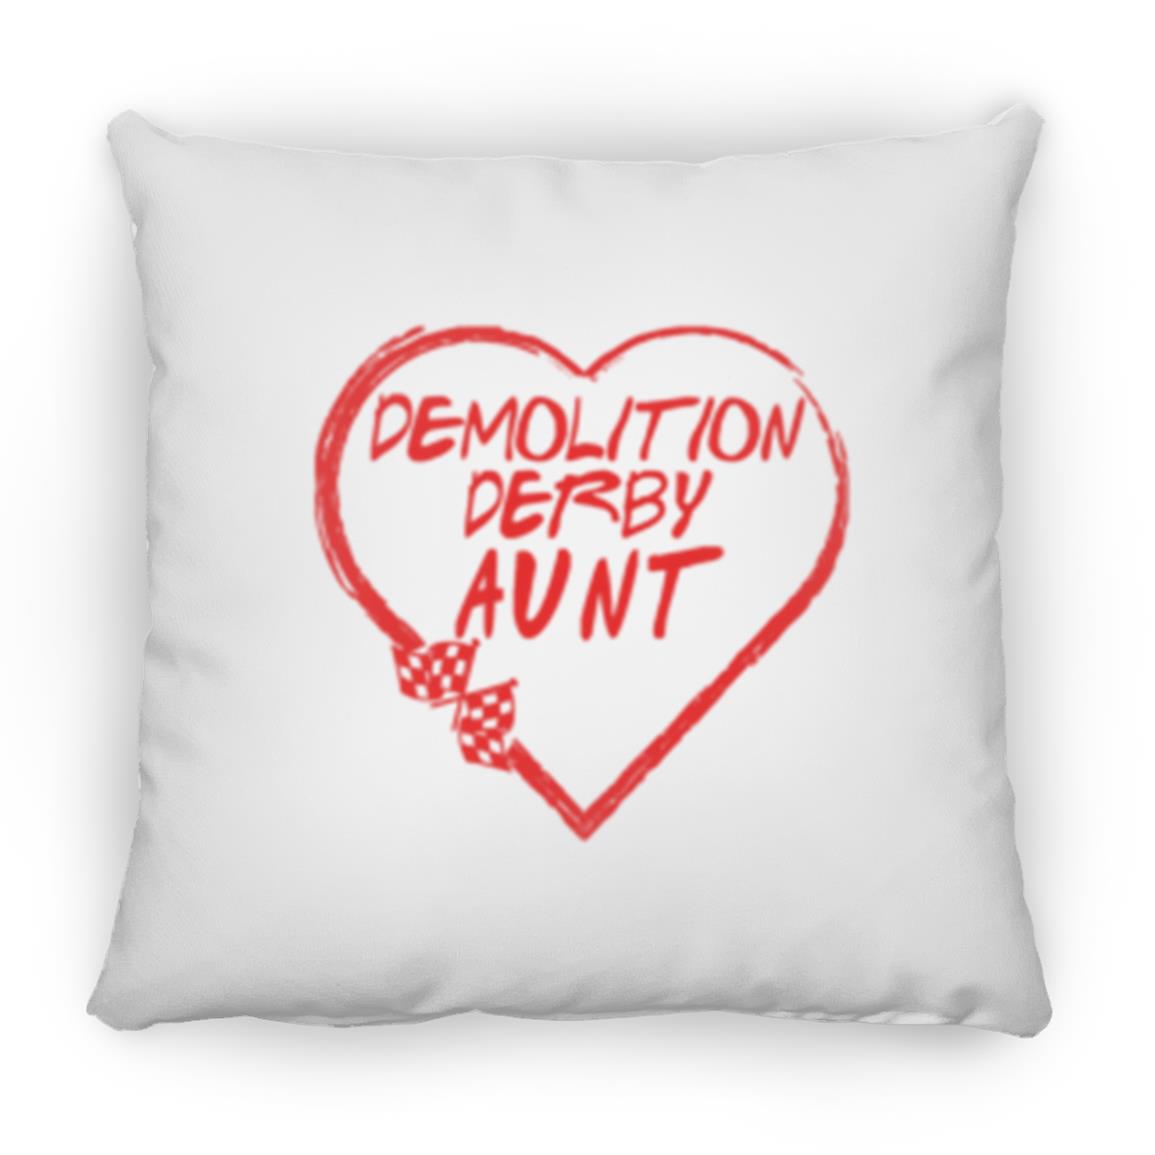 Demolition Derby Aunt Heart Large Square Pillow